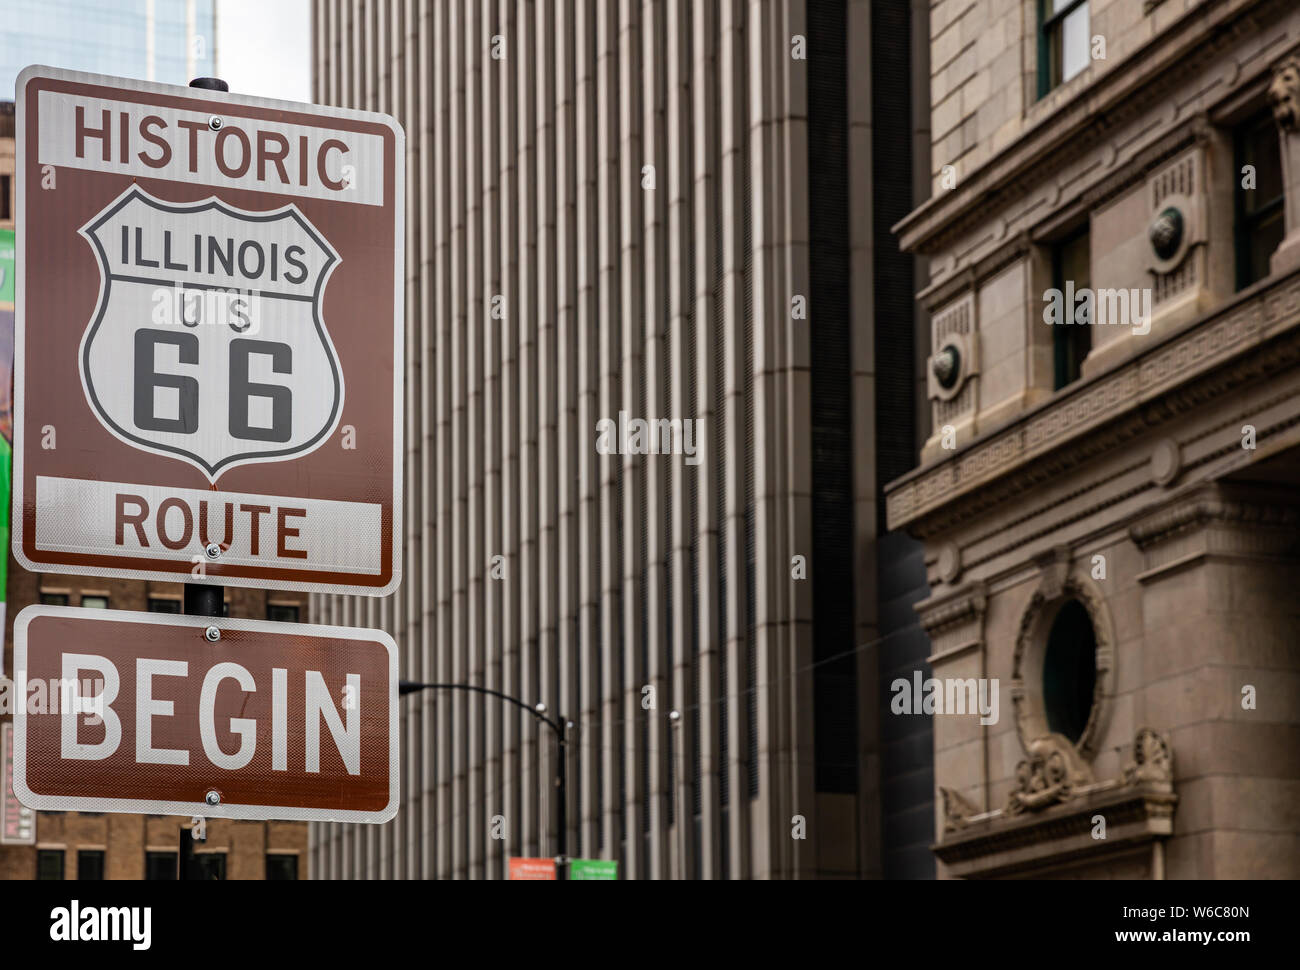 Route 66 Illinois iniziare cartello stradale a Chicago downtown della città. La facciata degli edifici dello sfondo. Route 66, madre road, il classico roadtrip storico NEGLI STATI UNITI Foto Stock